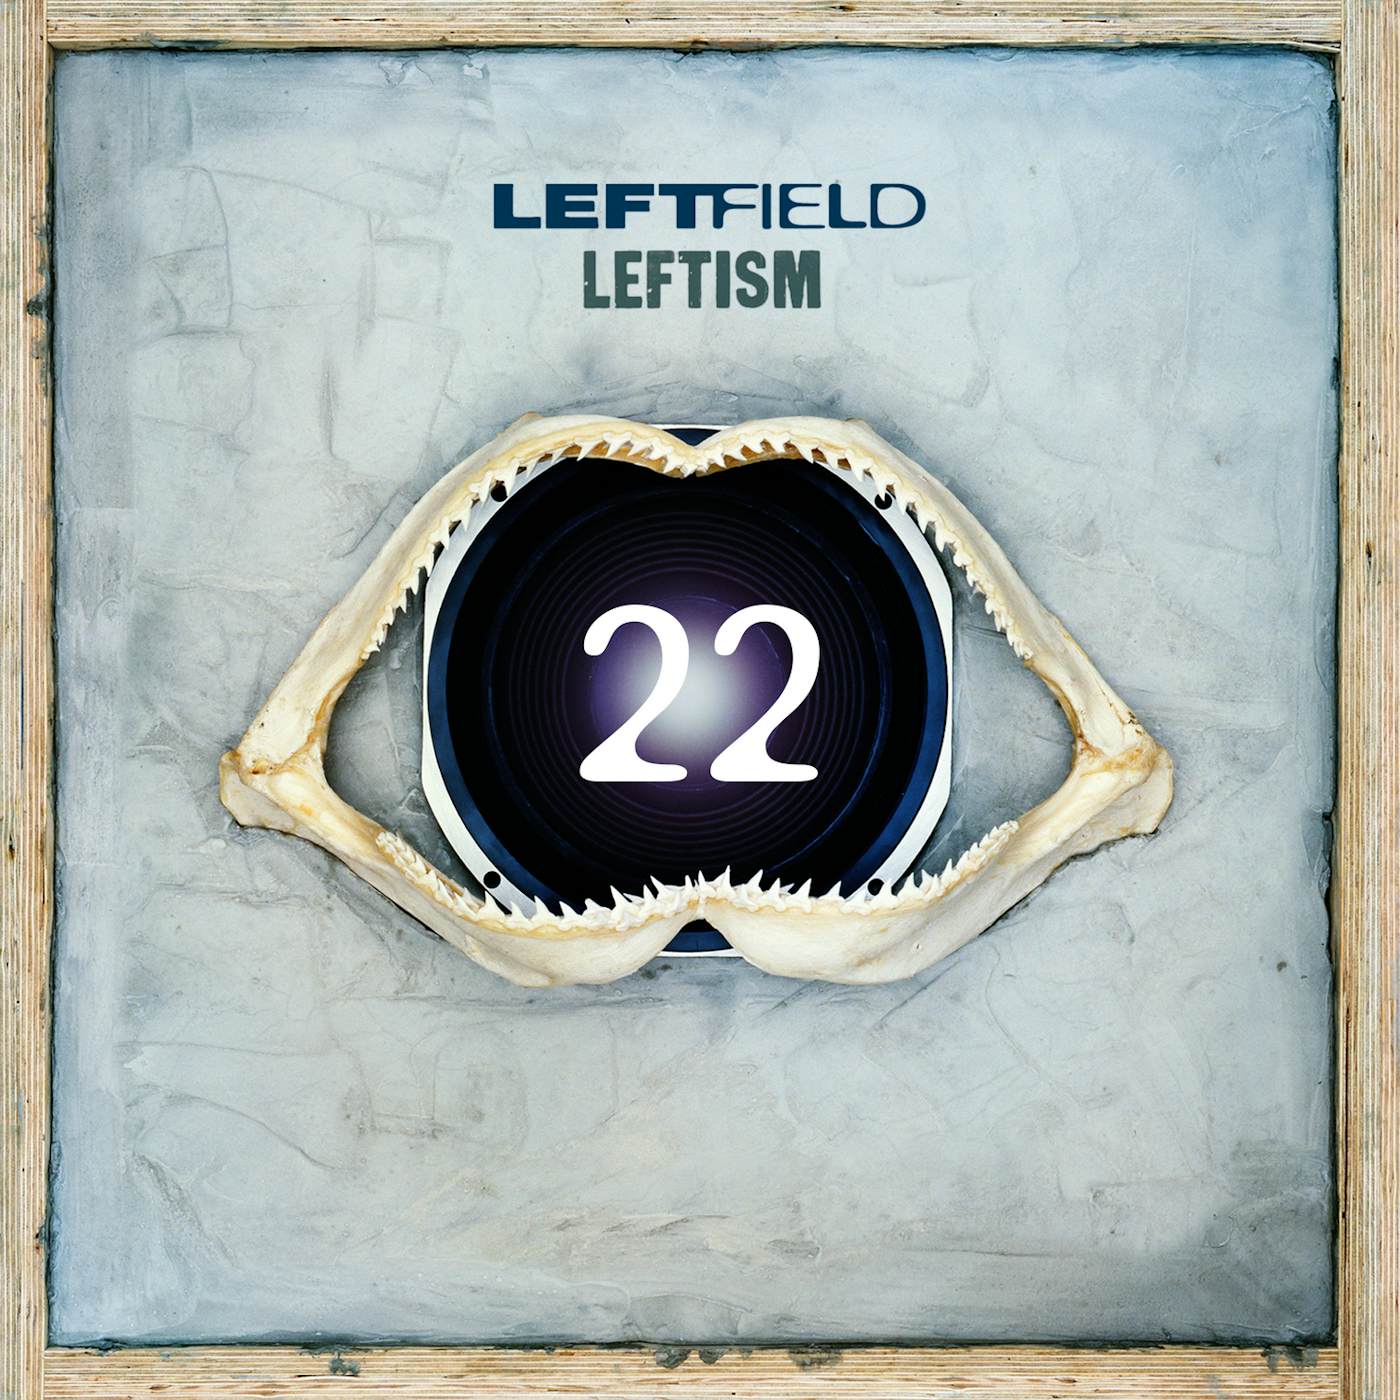 Leftfield LEFTISM 22 CD